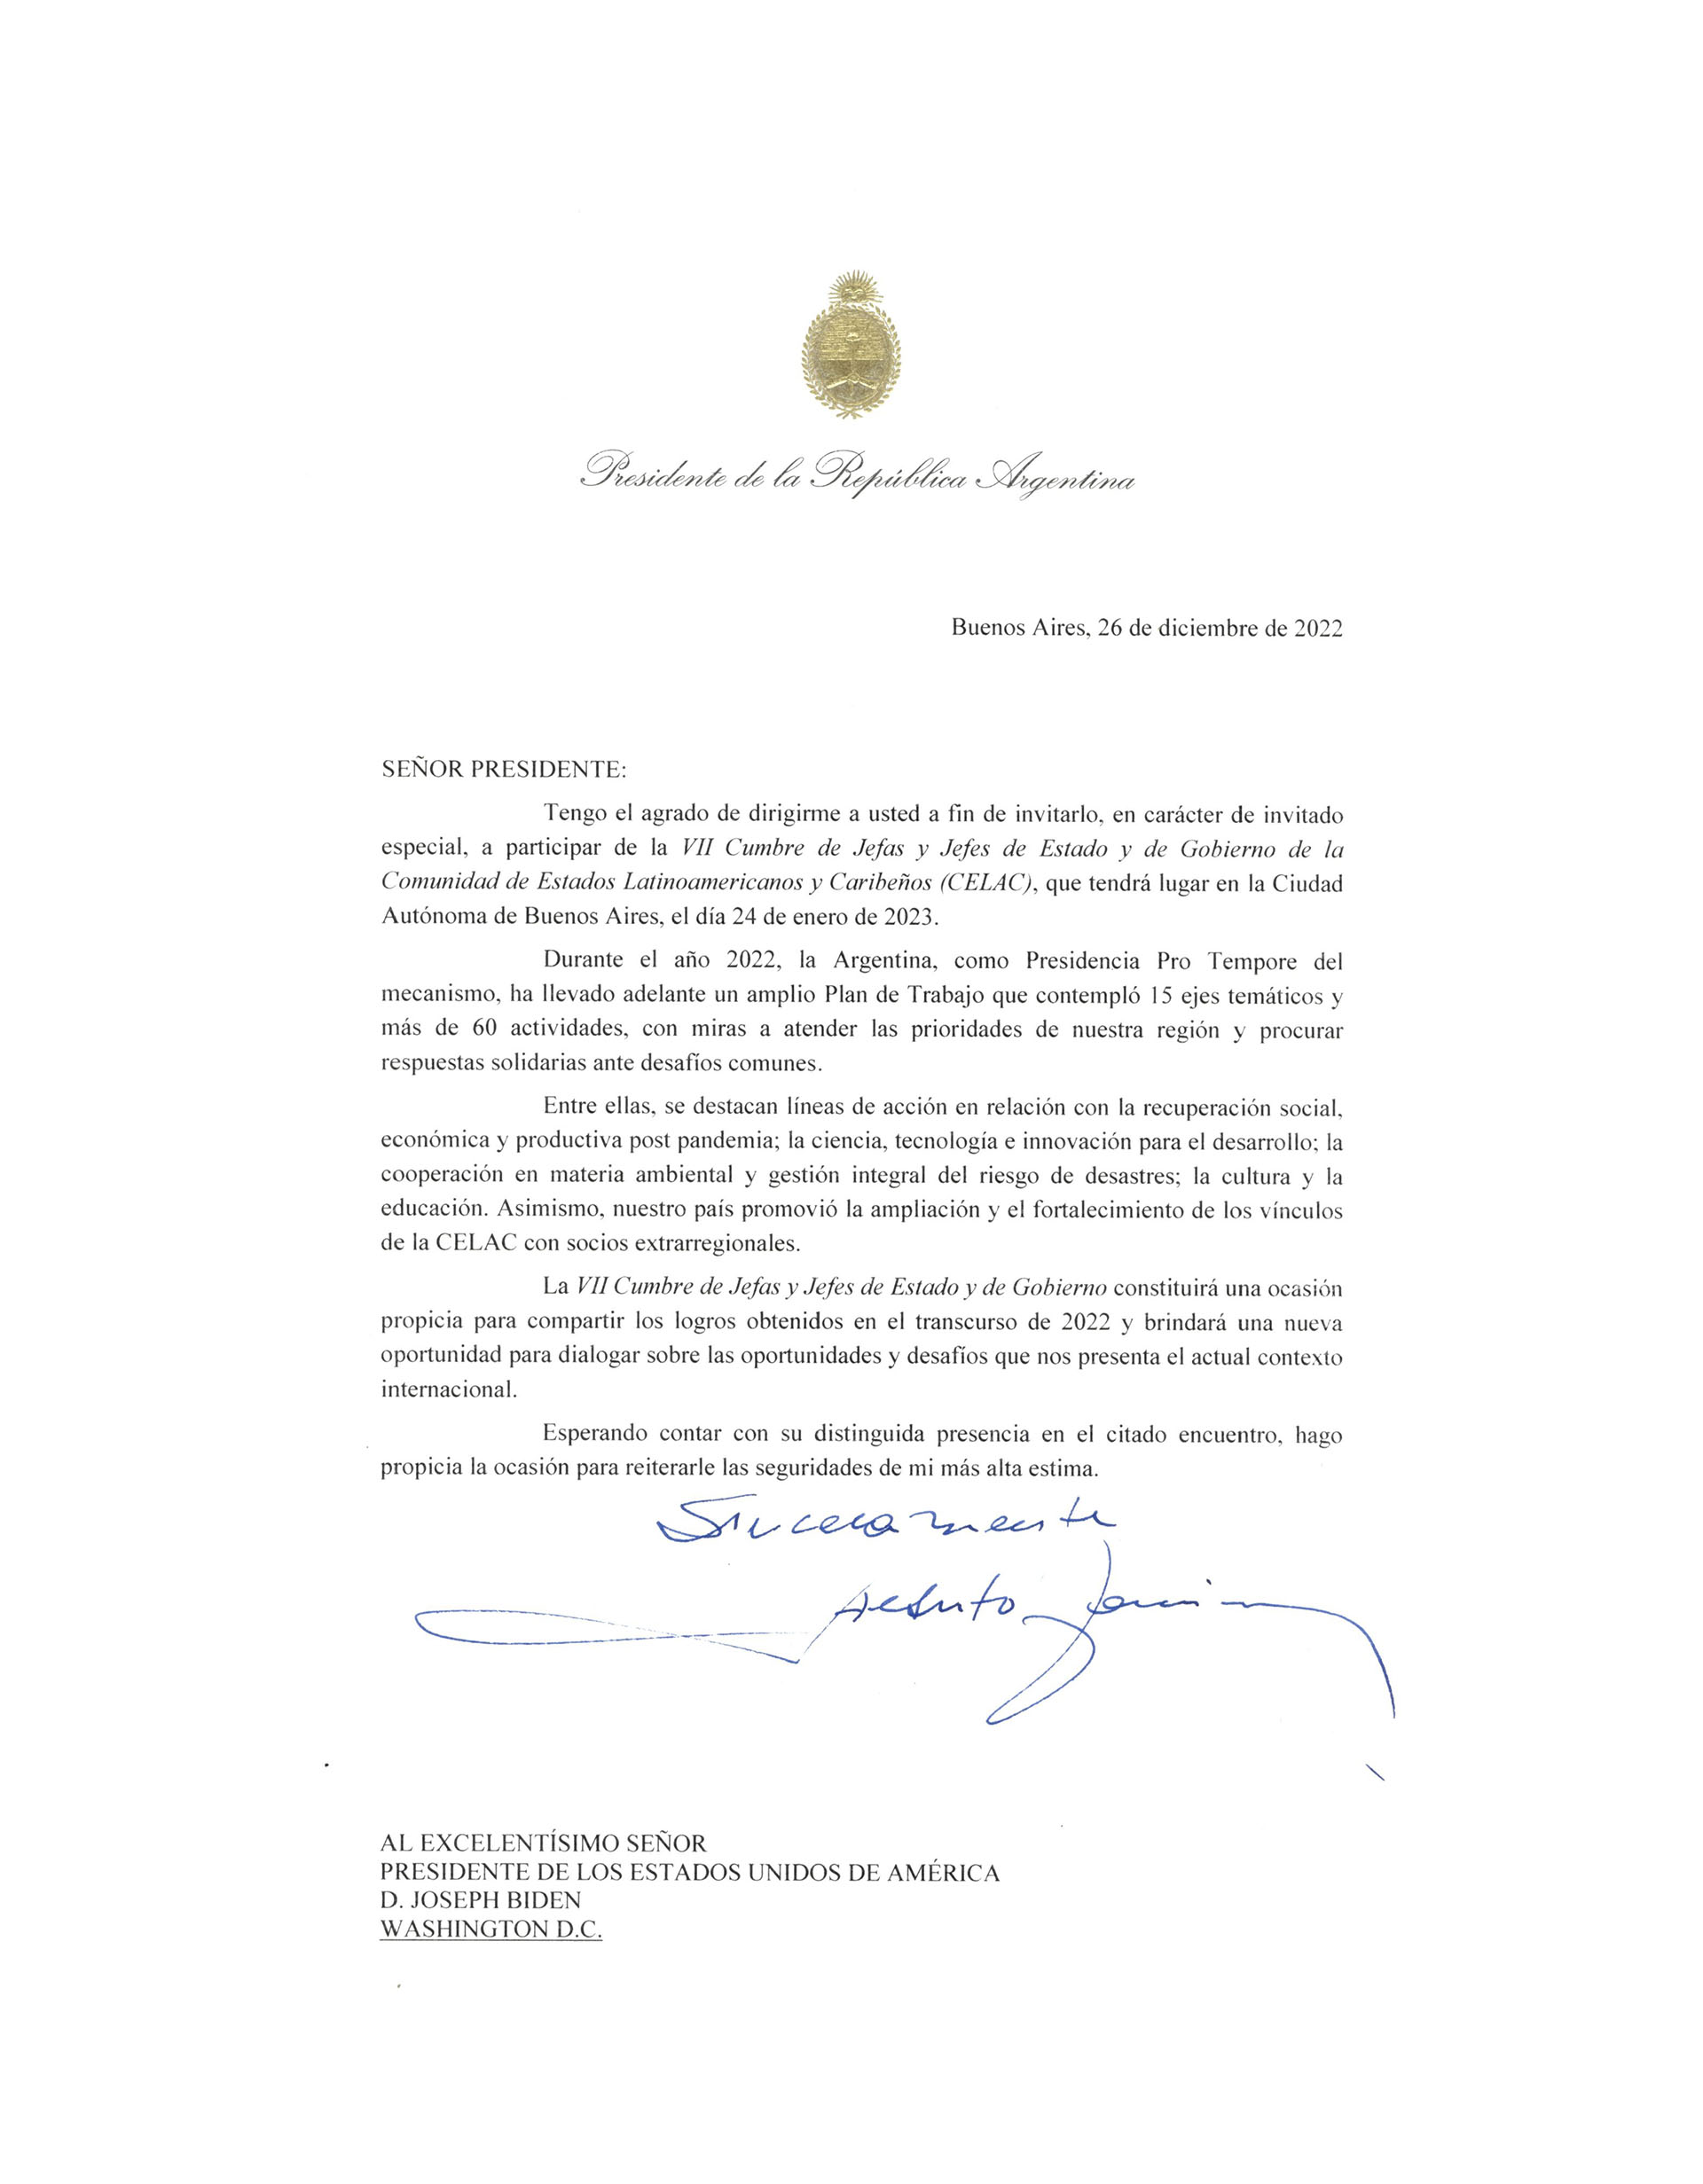 Facsímil de la carta de invitación oficial a la Cumbre de la CELAC enviada por Alberto Fernández a Joseph Biden